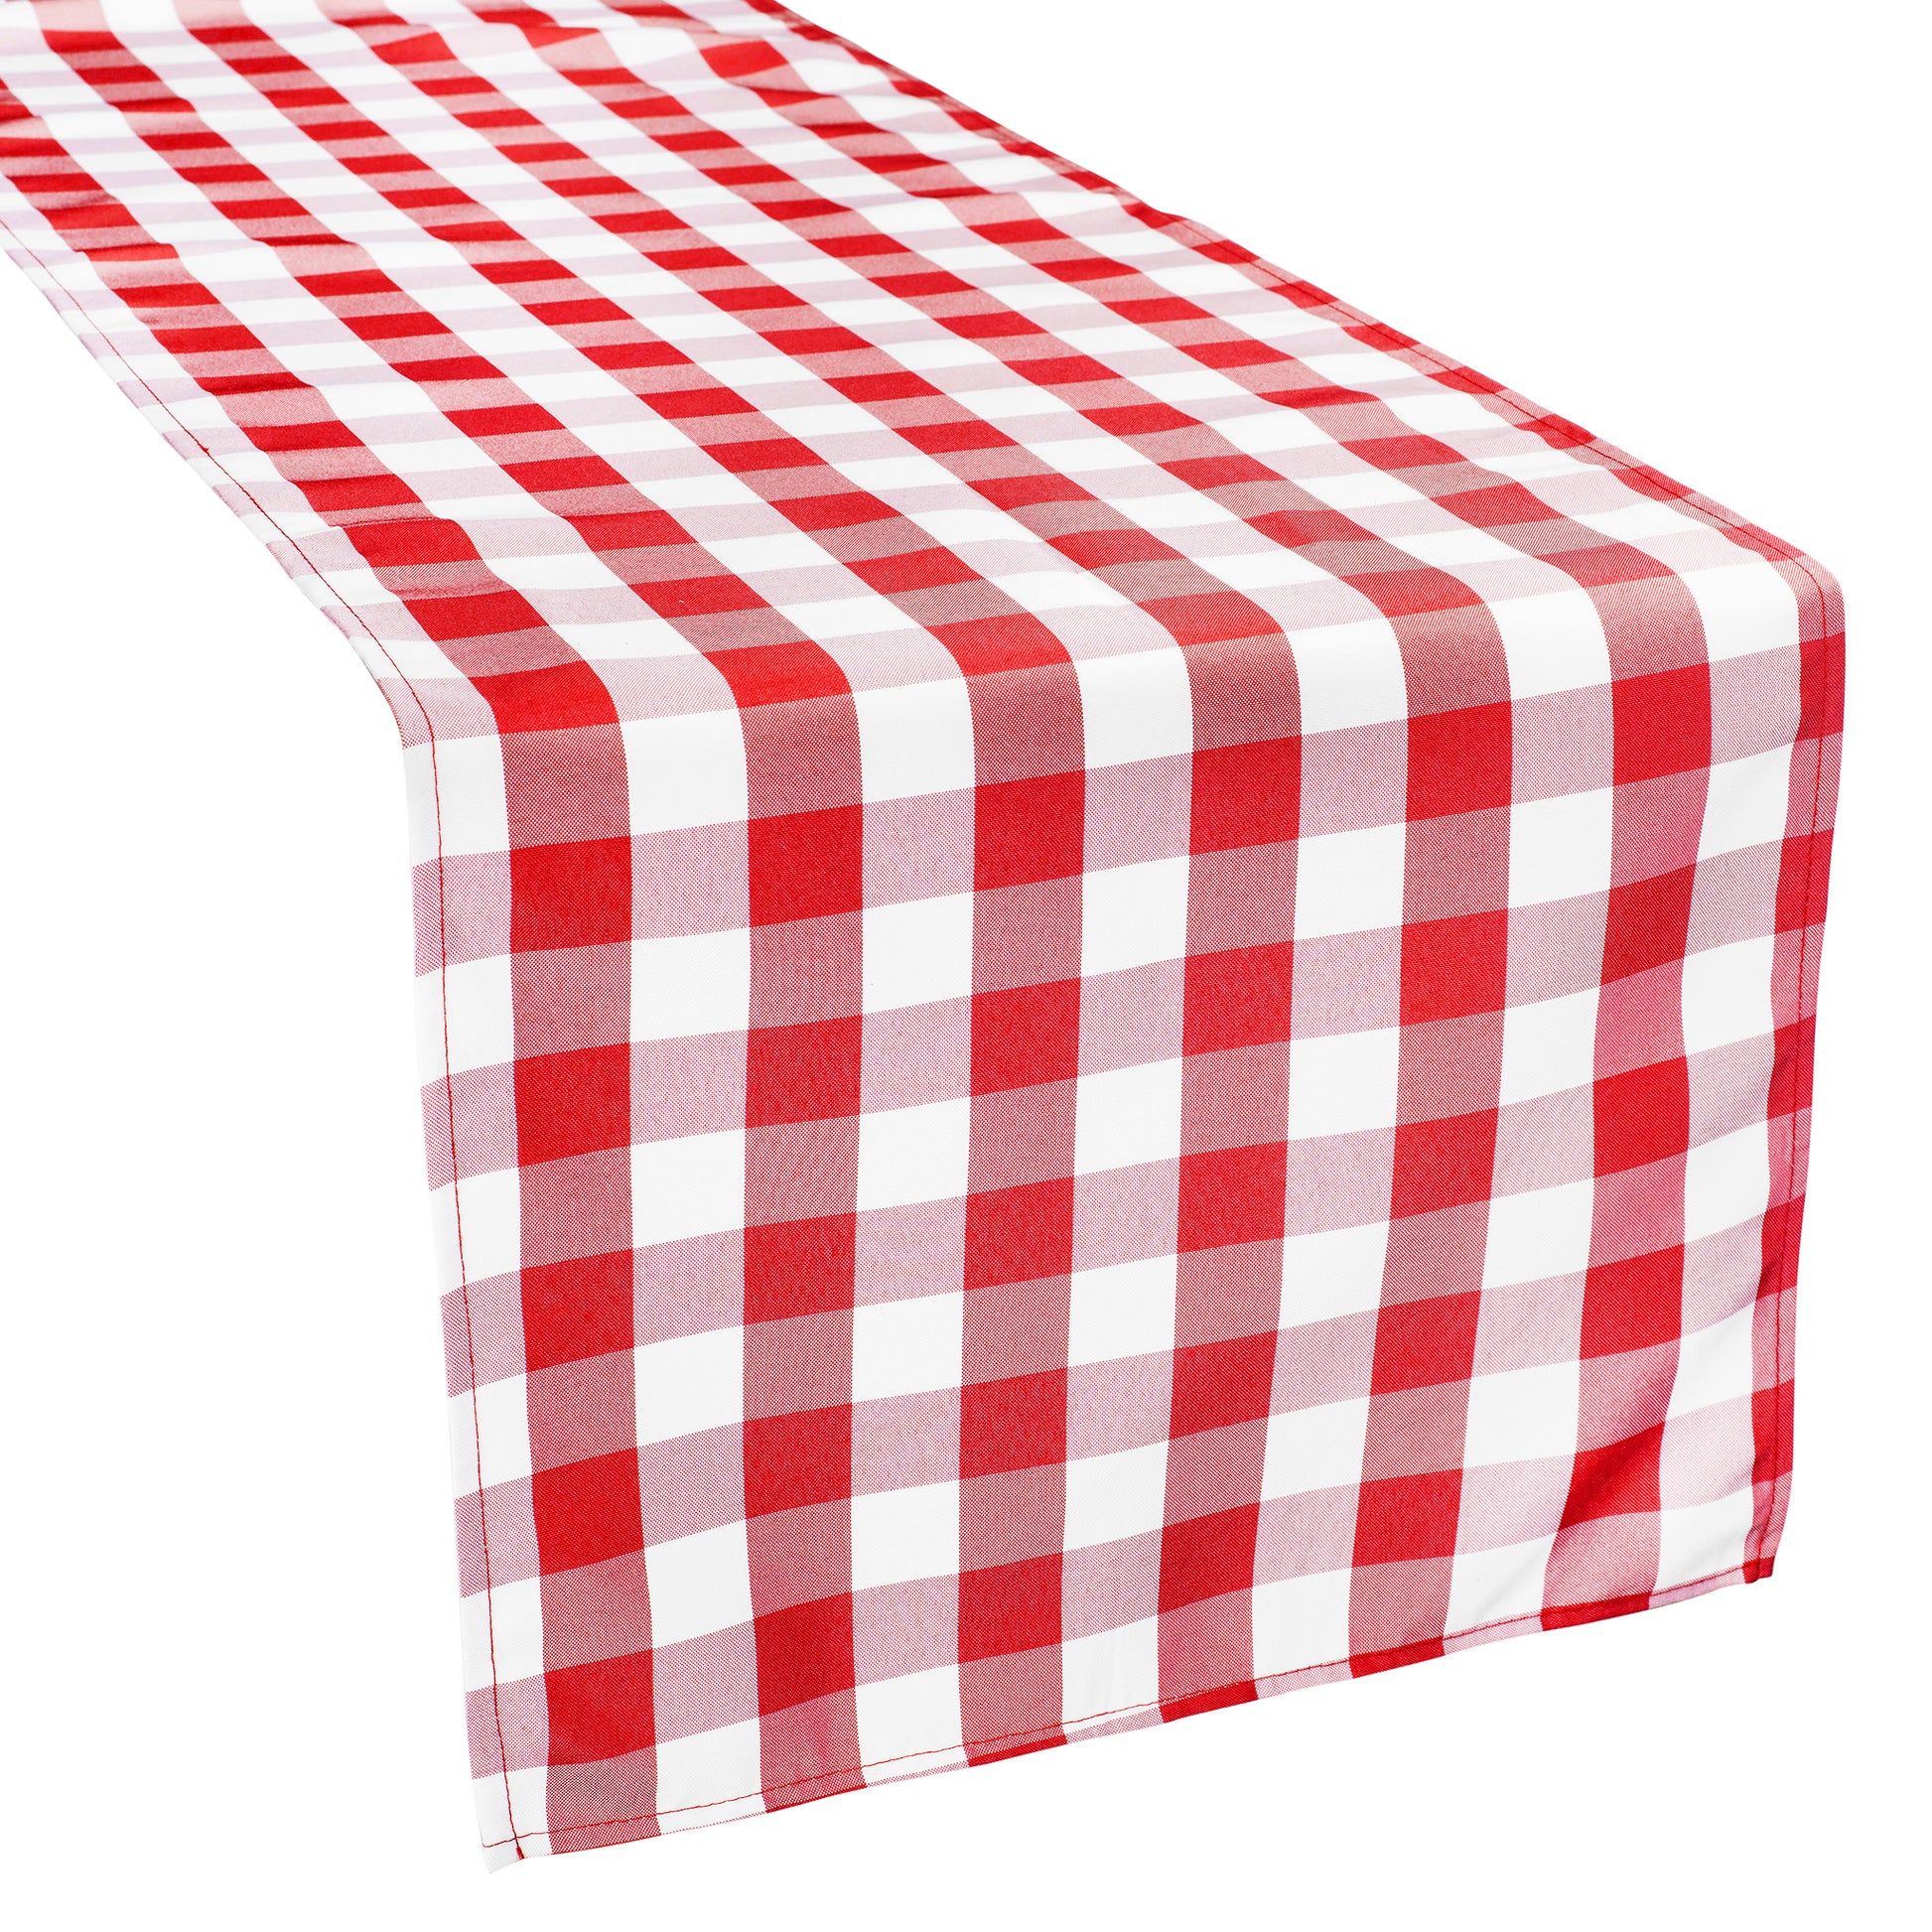 Gingham Checkered Polyester Table Runner - Red & White - CV Linens